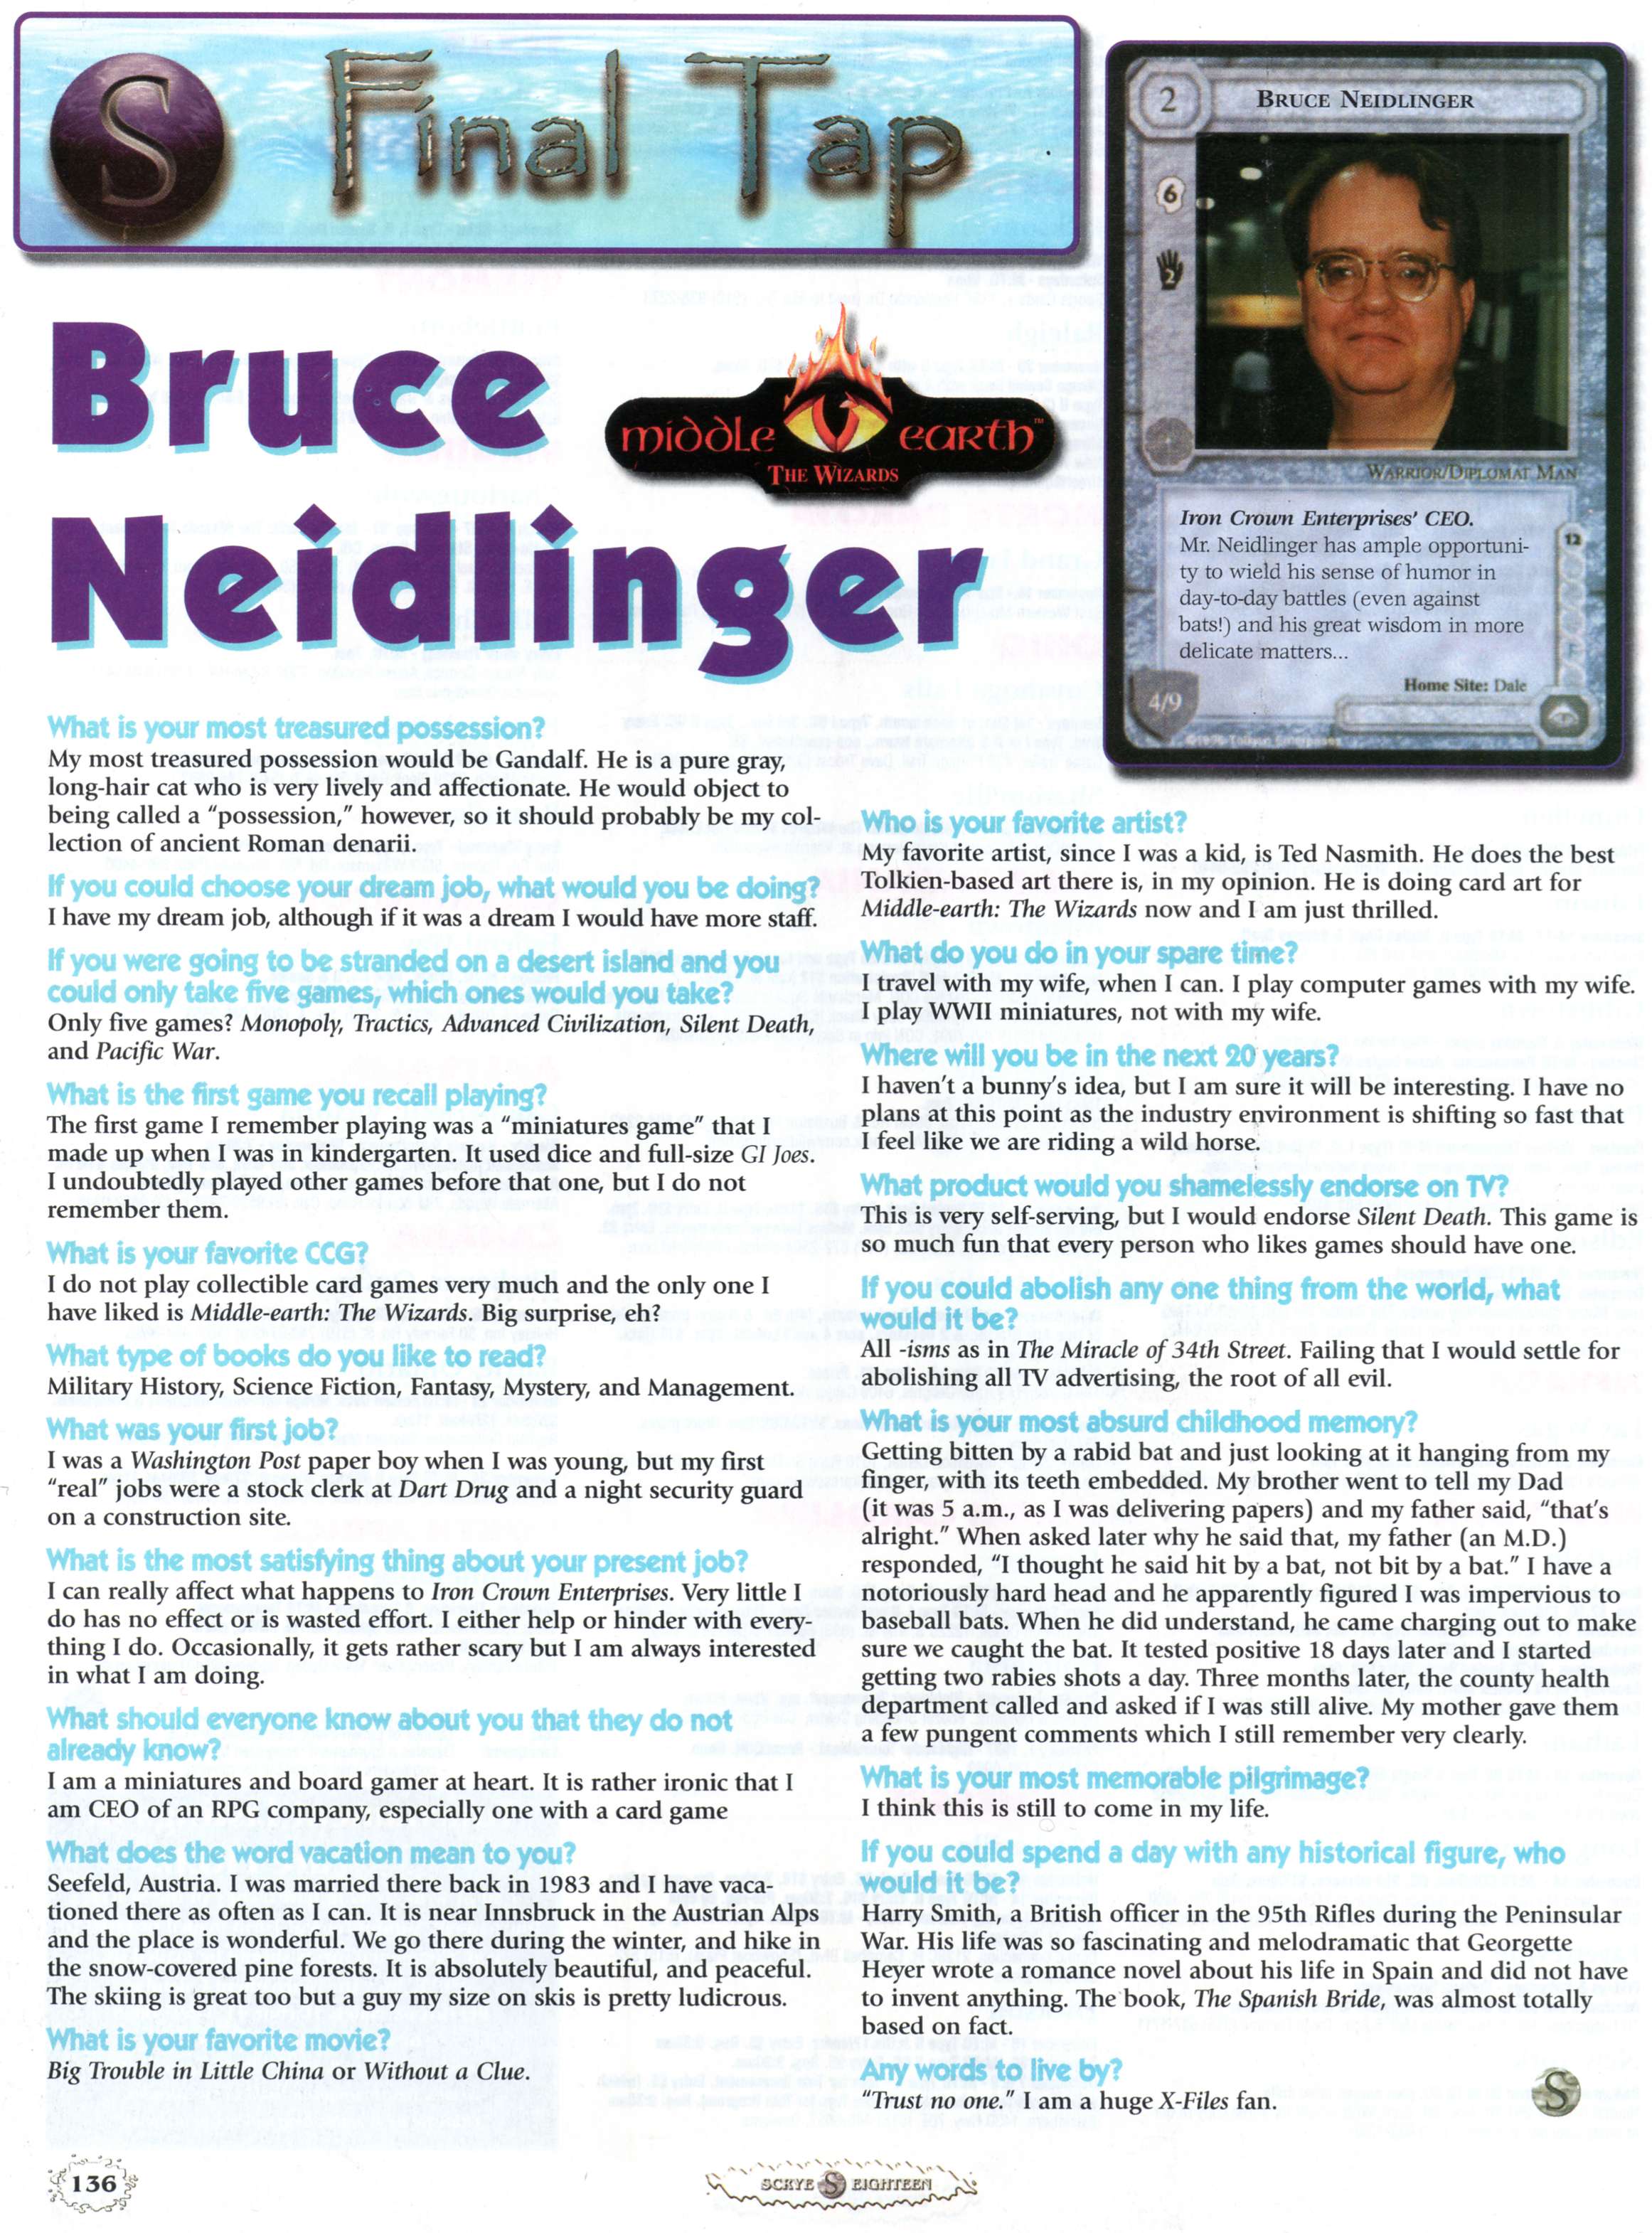 18_interview_Bruce_Neidlinger.jpg